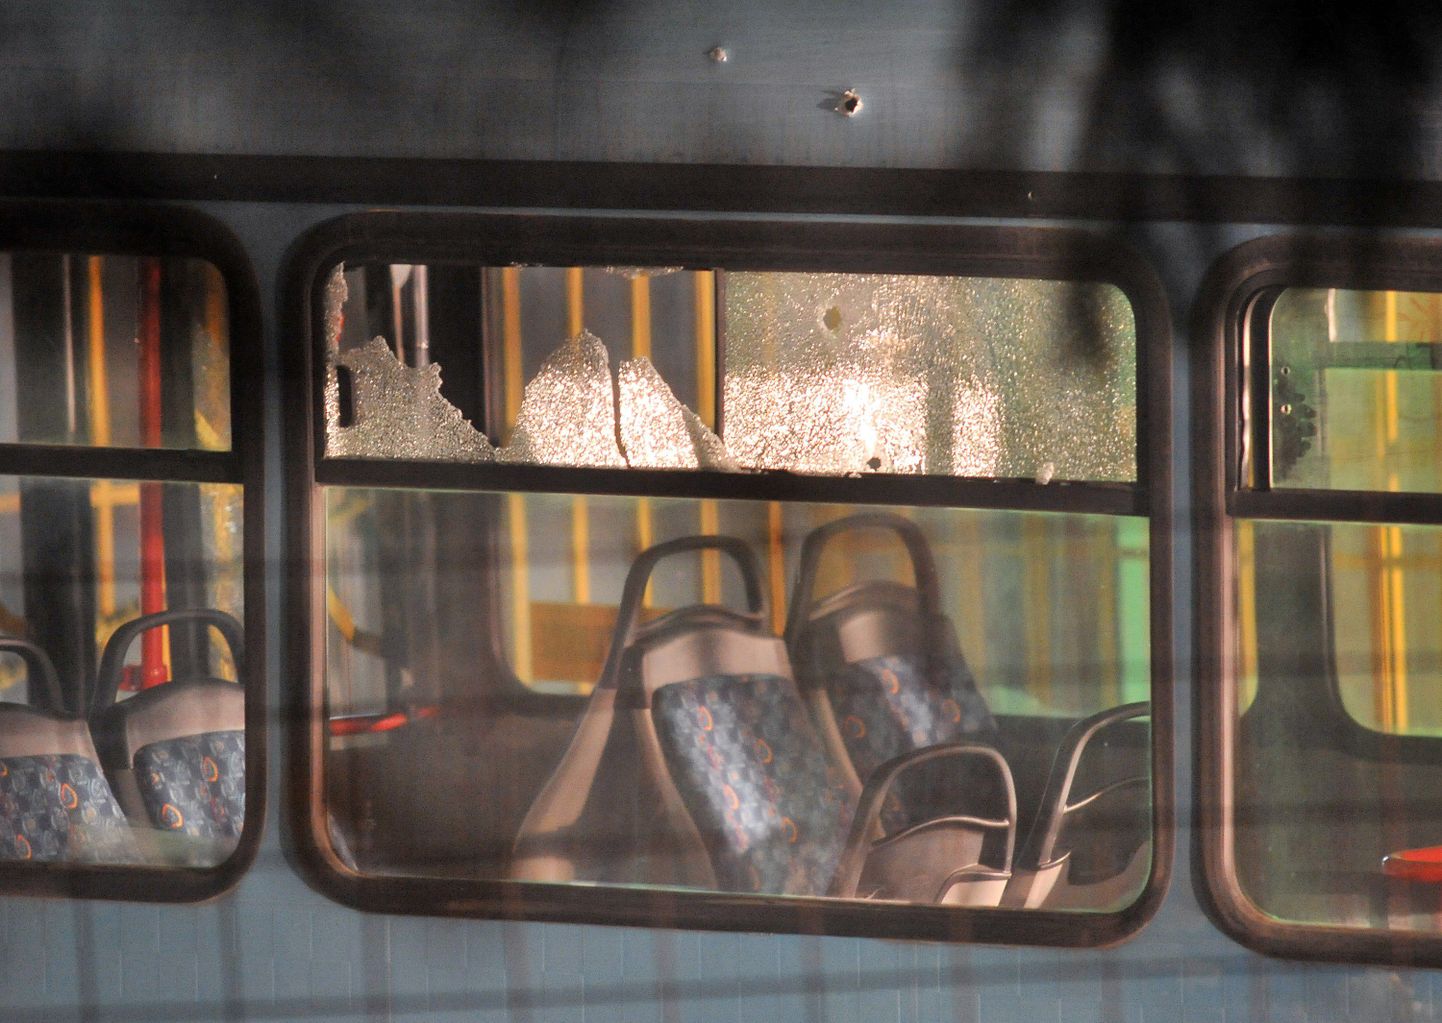 Kuuliaugud rünnaku alla langenud bussi akendes.